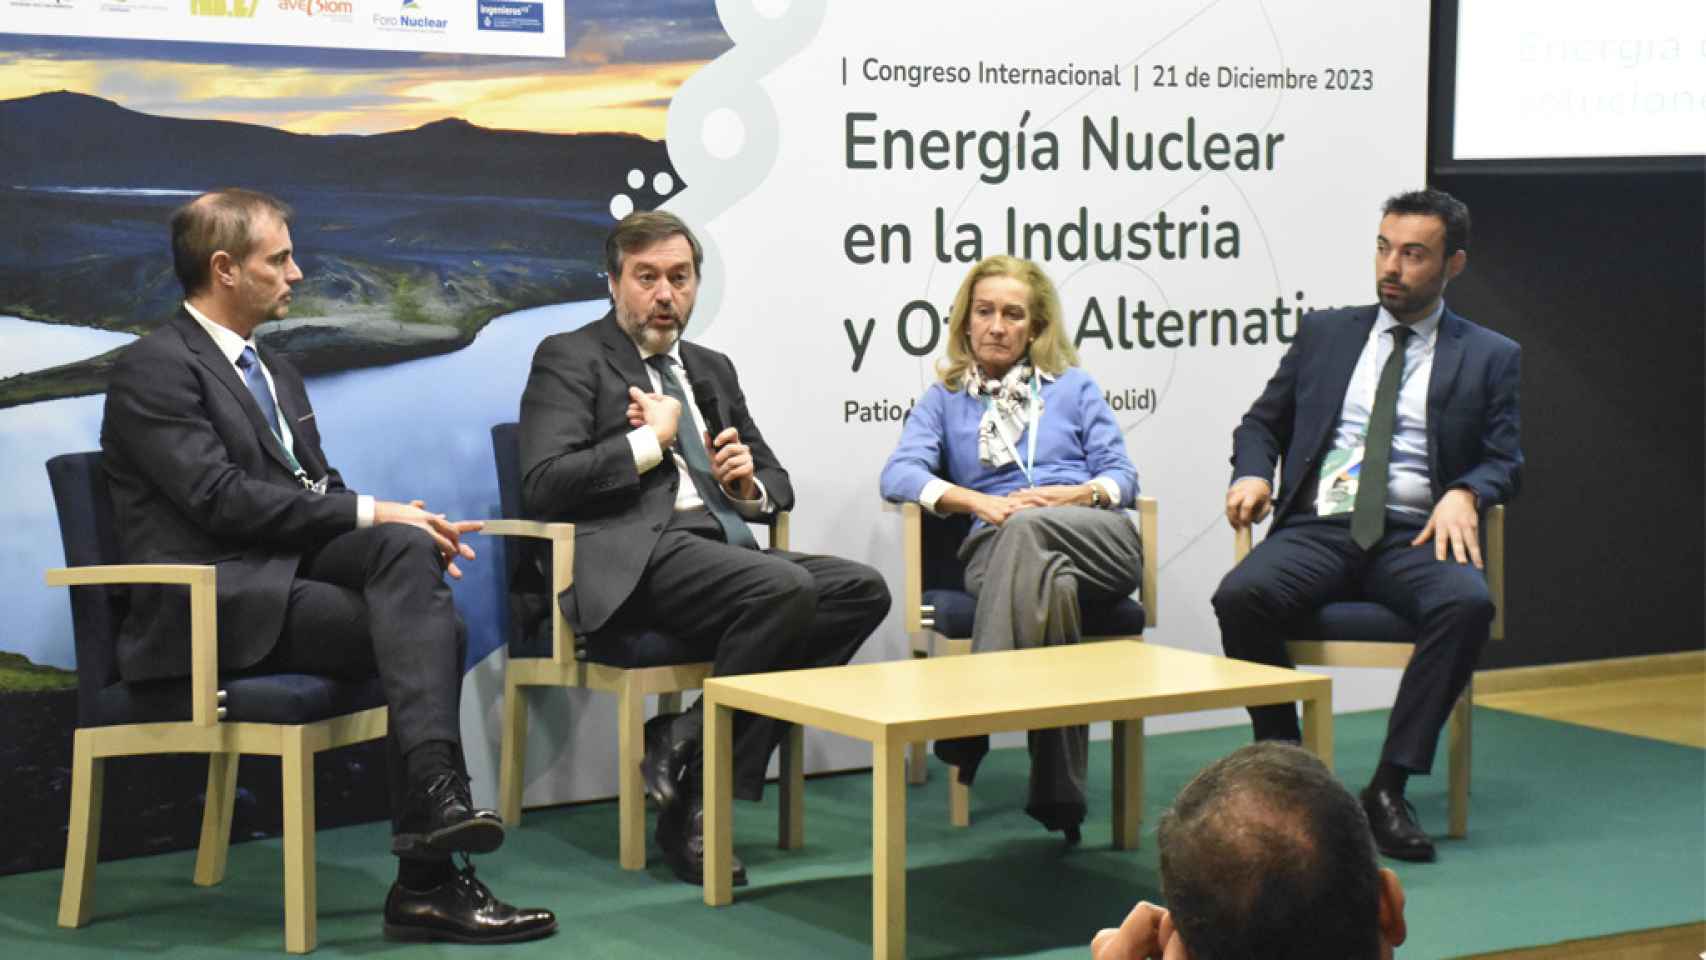 La mesa redonda con los cuatro ponentes sobre las energías renovables